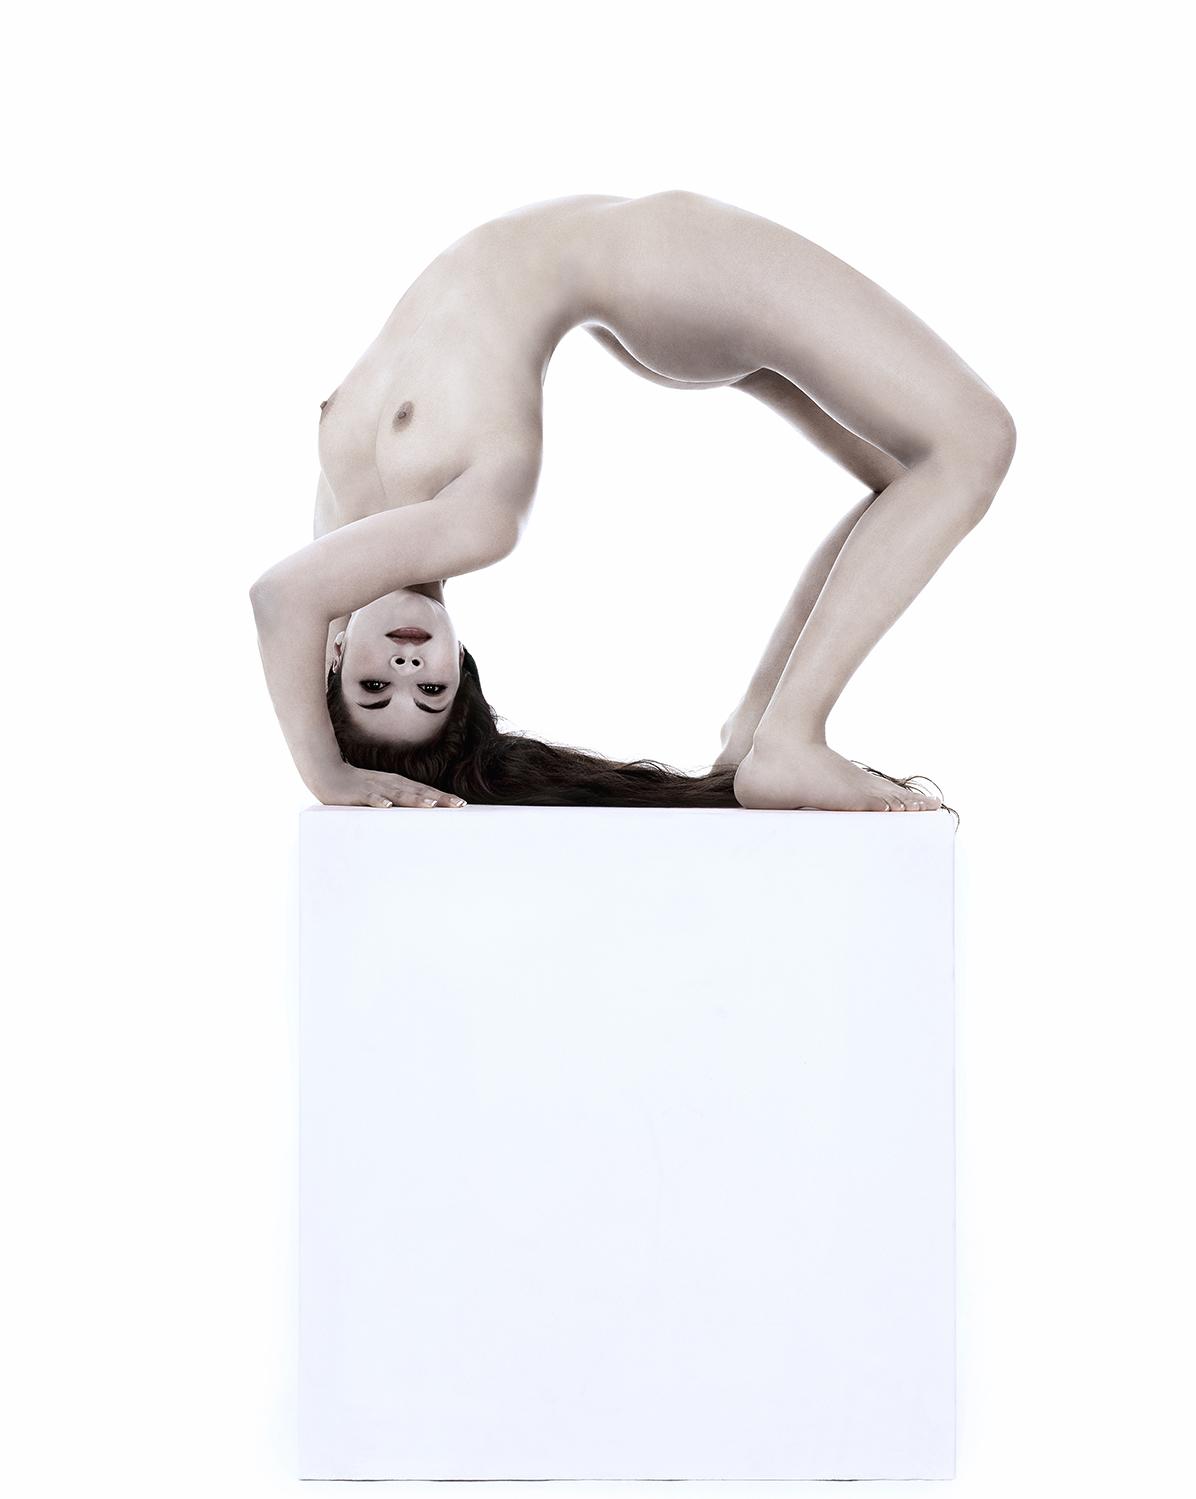 La contorsionniste pose pour une photographie de Gerard Rancinan sur un cube blanc.